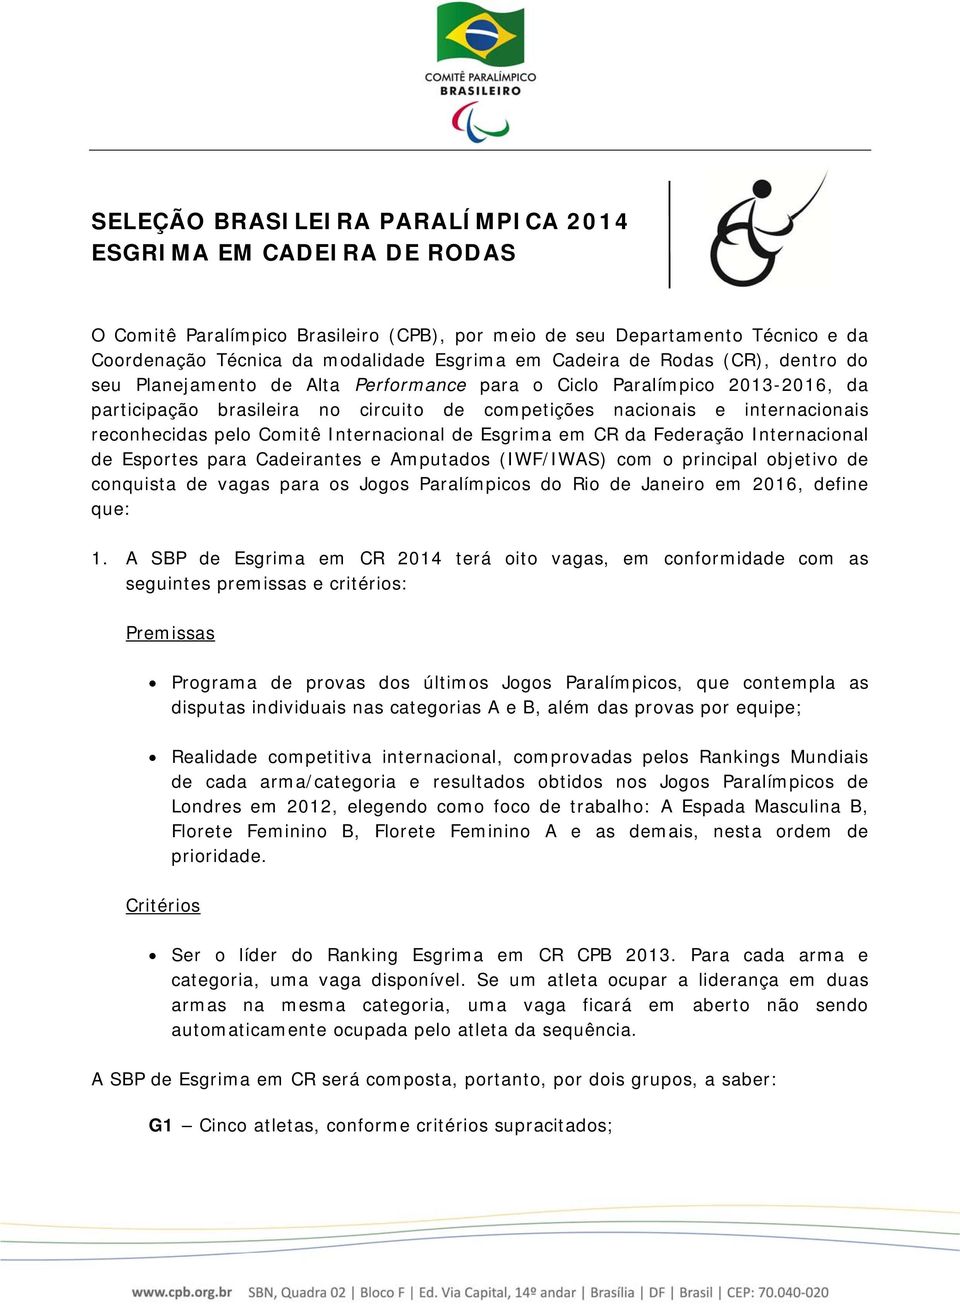 Comitê Internacional de Esgrima em CR da Federação Internacional de Esportes para Cadeirantes e Amputados (IWF/IWAS) com o principal objetivo de conquista de vagas para os Jogos Paralímpicos do Rio